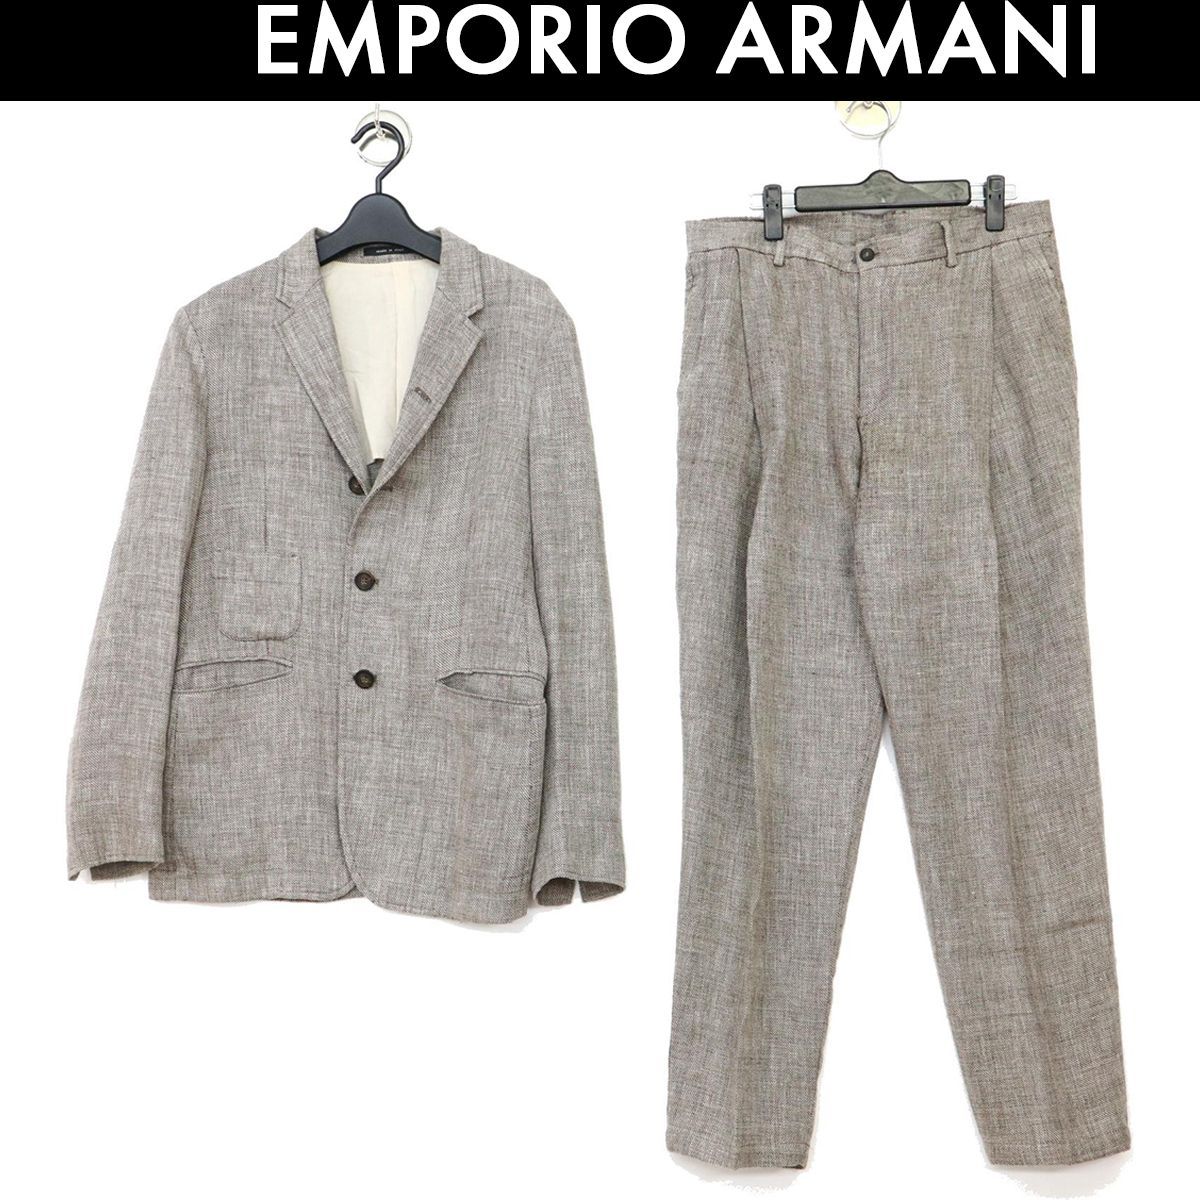 アルマーニ スーツ セットアップ リネン混 麻 EMPORIO ARMANI 